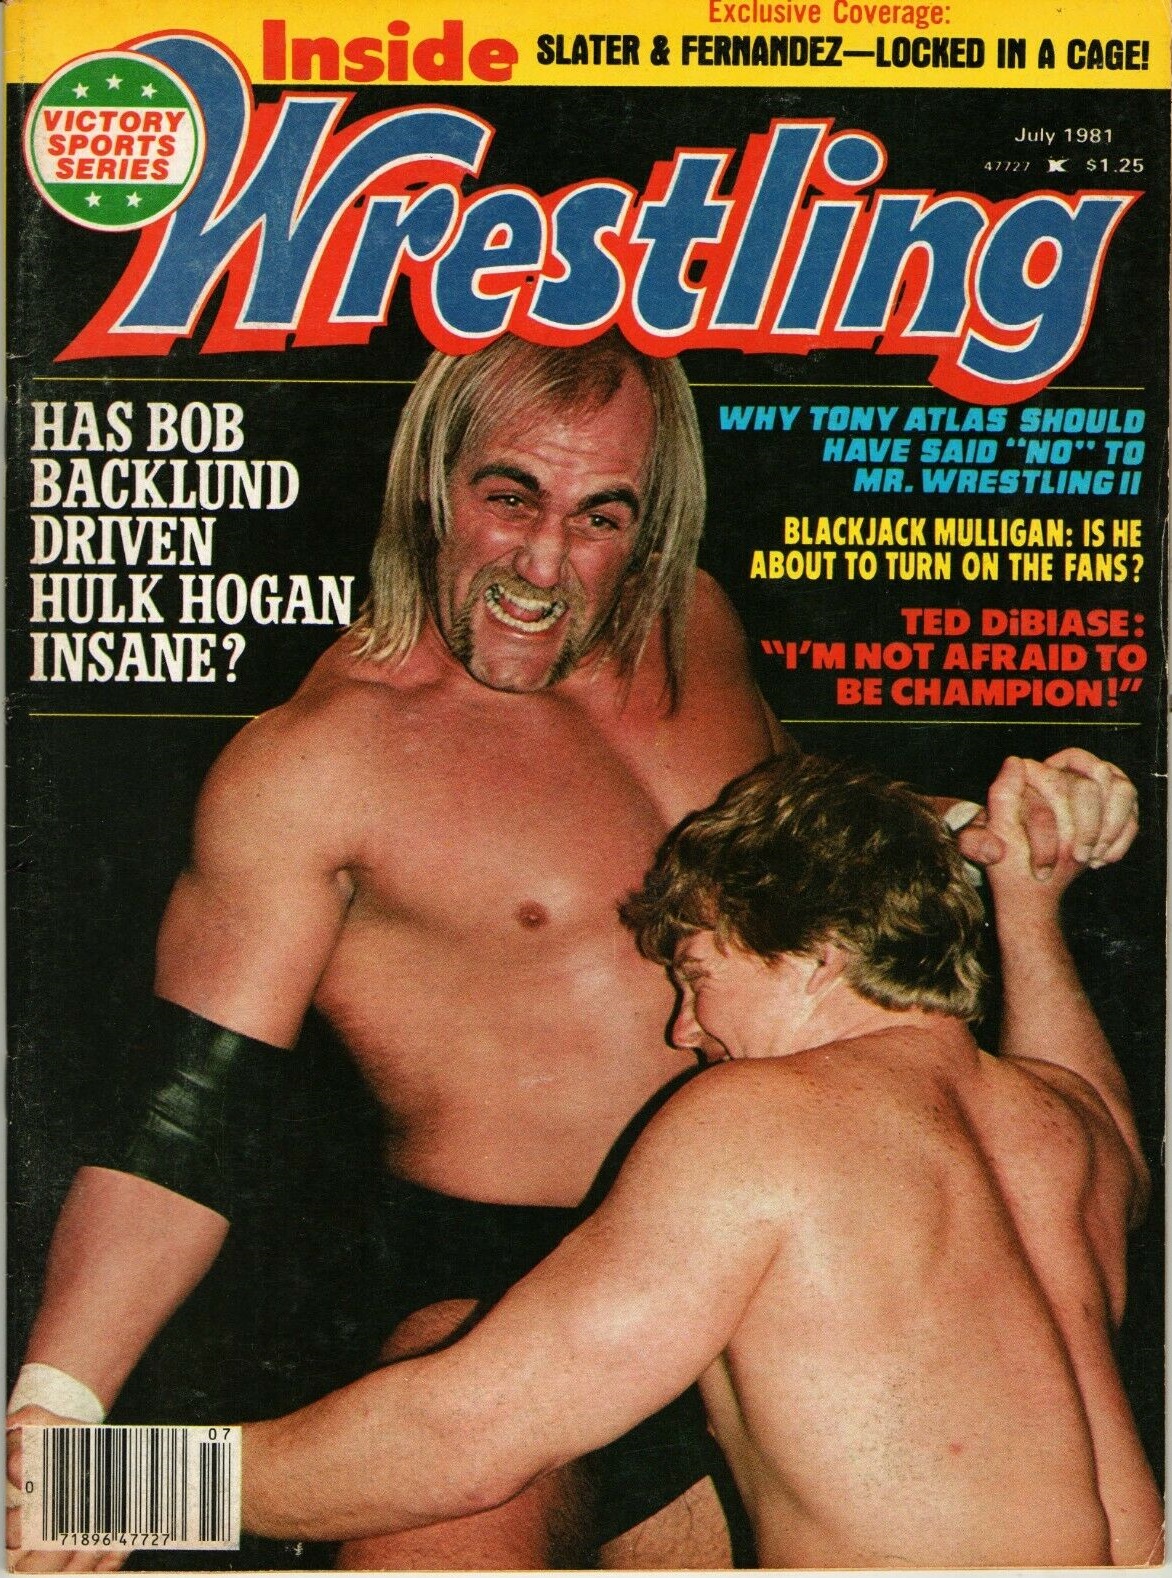 Inside Wrestling July 1981, Inside Wrestling July 1981 Magazine B